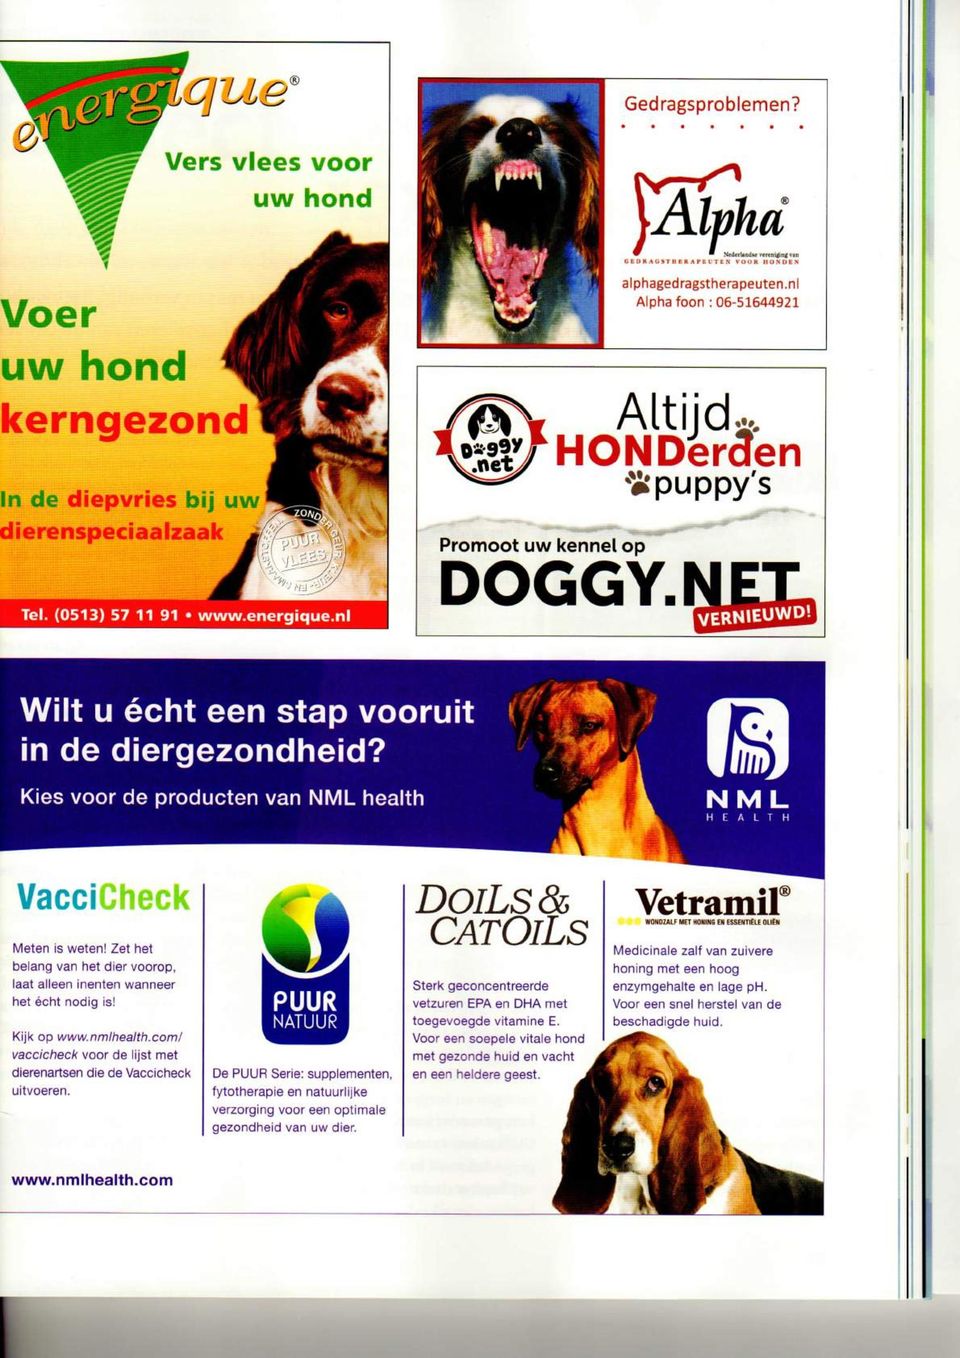 Zet het belang van het dier voorop, laat alleen inenten wanneer het écht nodig is! Kijk op www.nmlhealth.com/ vaccicheck voor de lijst met dierenartsen die de Vaccicheck uitvoeren.